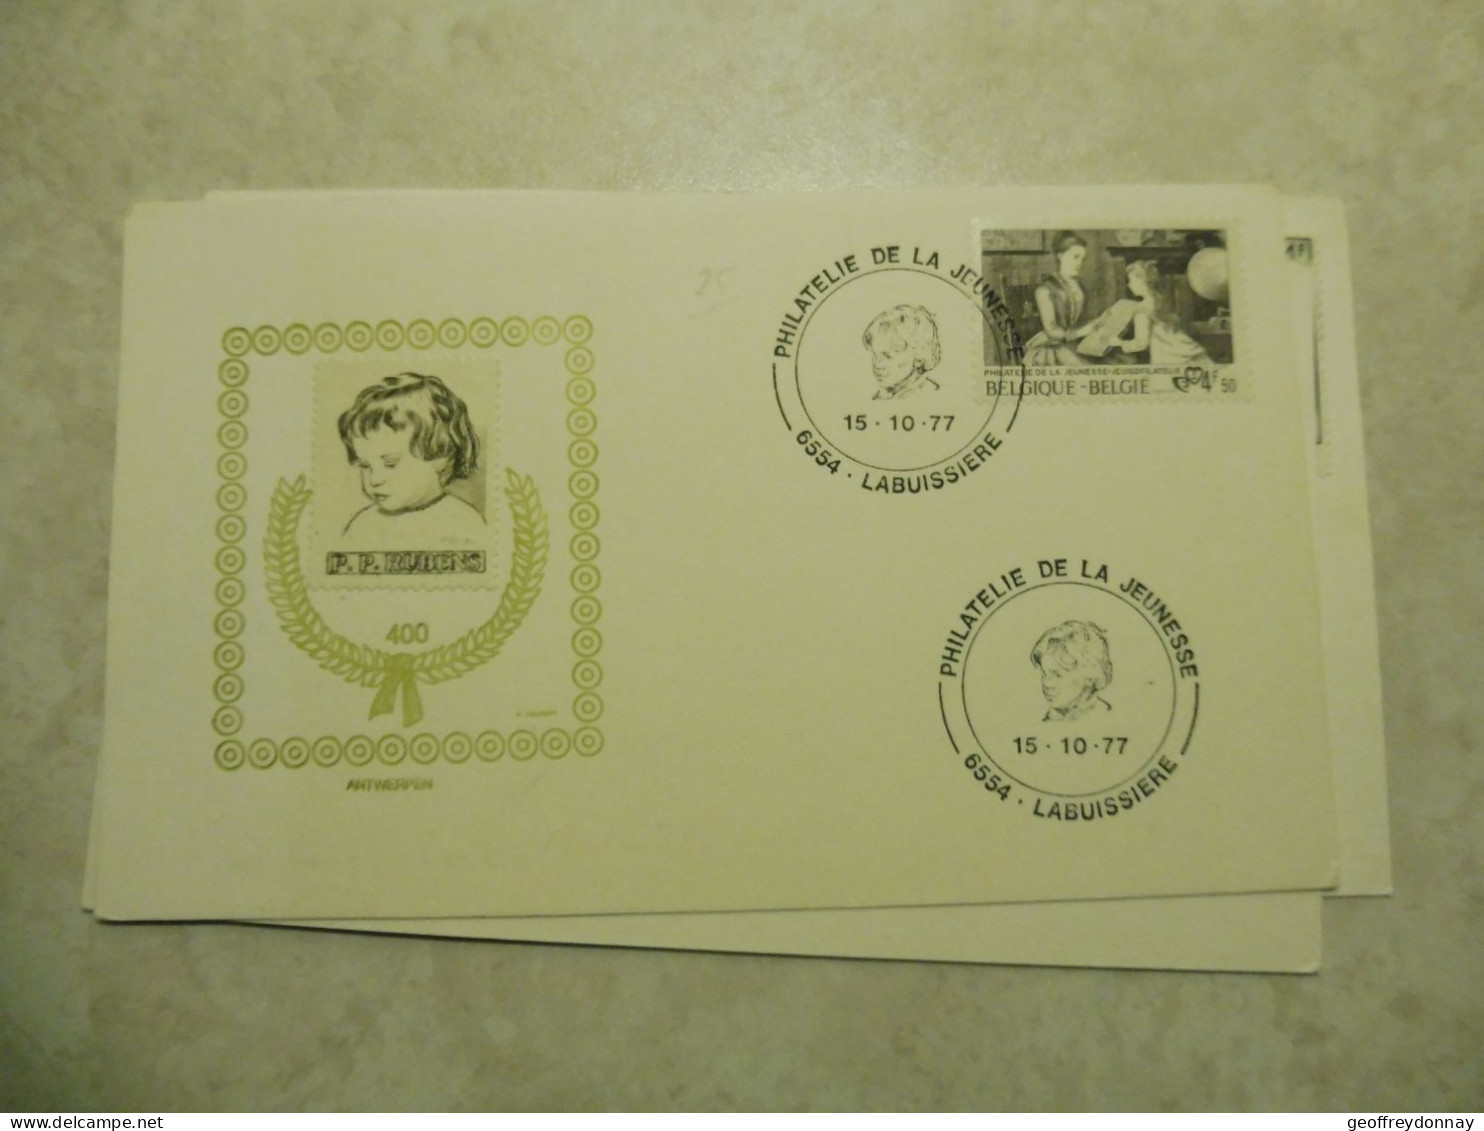 Belgique Belgie   3 Souvenir  Différents Gestempelt / Oblitéré 1977  Elisabeth Vignette Rubens - Post Office Leaflets